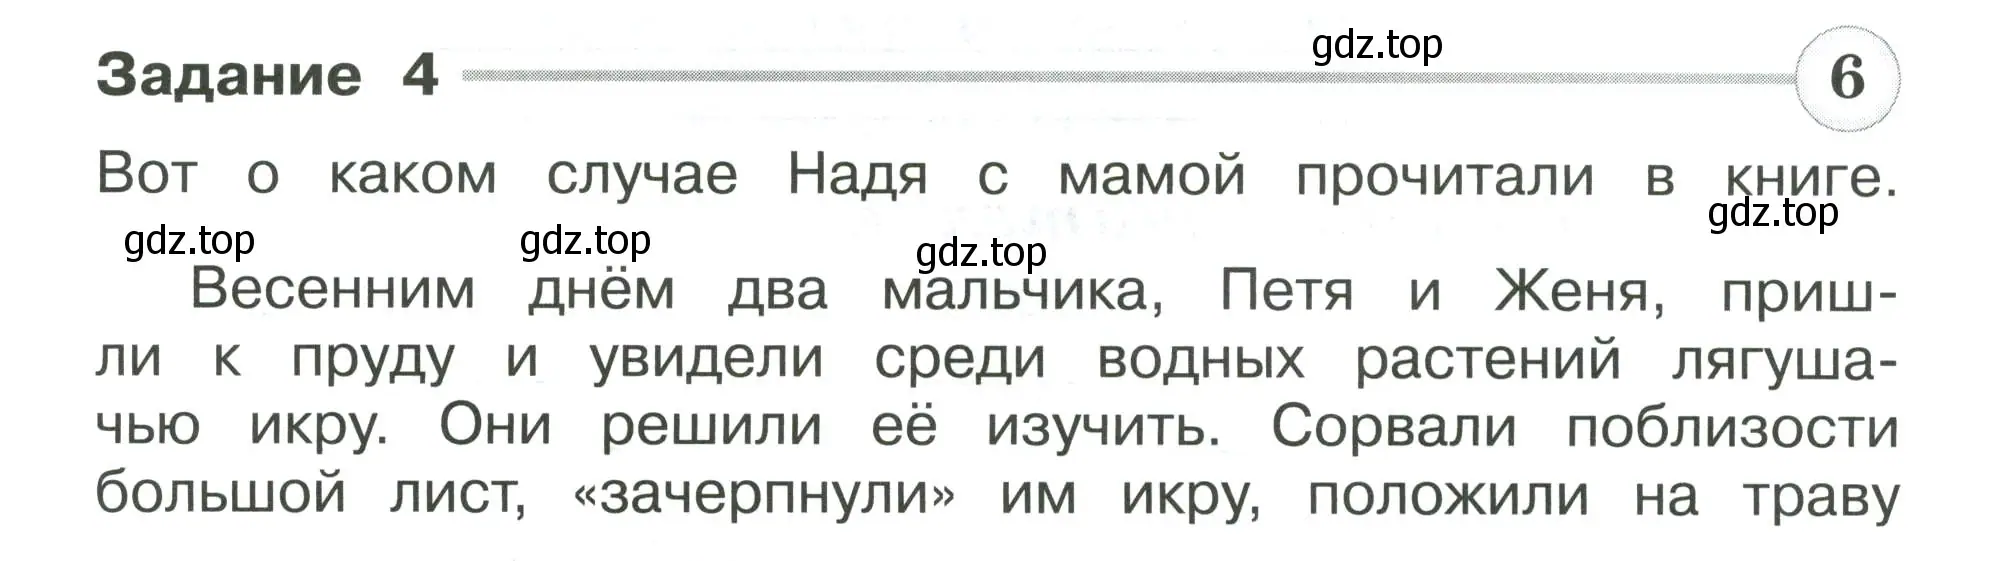 Условие номер 4 (страница 43) гдз по окружающему миру 4 класс Плешаков, Крючкова, проверочные работы